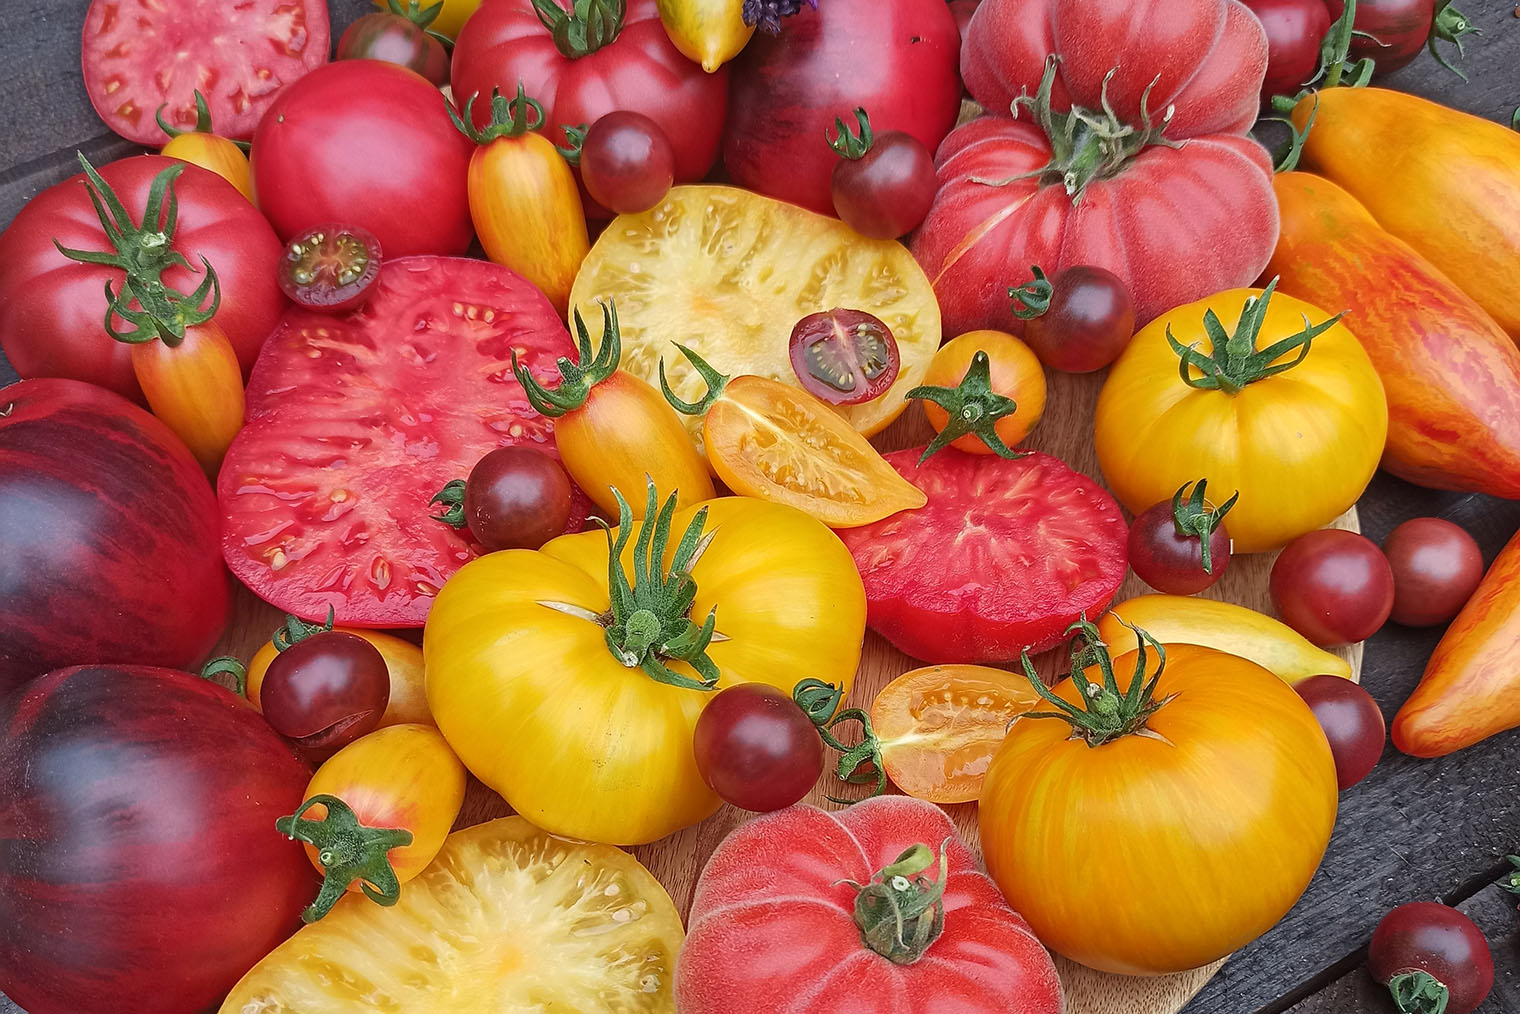 Когда созревают первые помидоры, у нас в семье устраивают дегустацию, чтобы сравнить вкусы и решить, какие сорта и гибриды нравятся